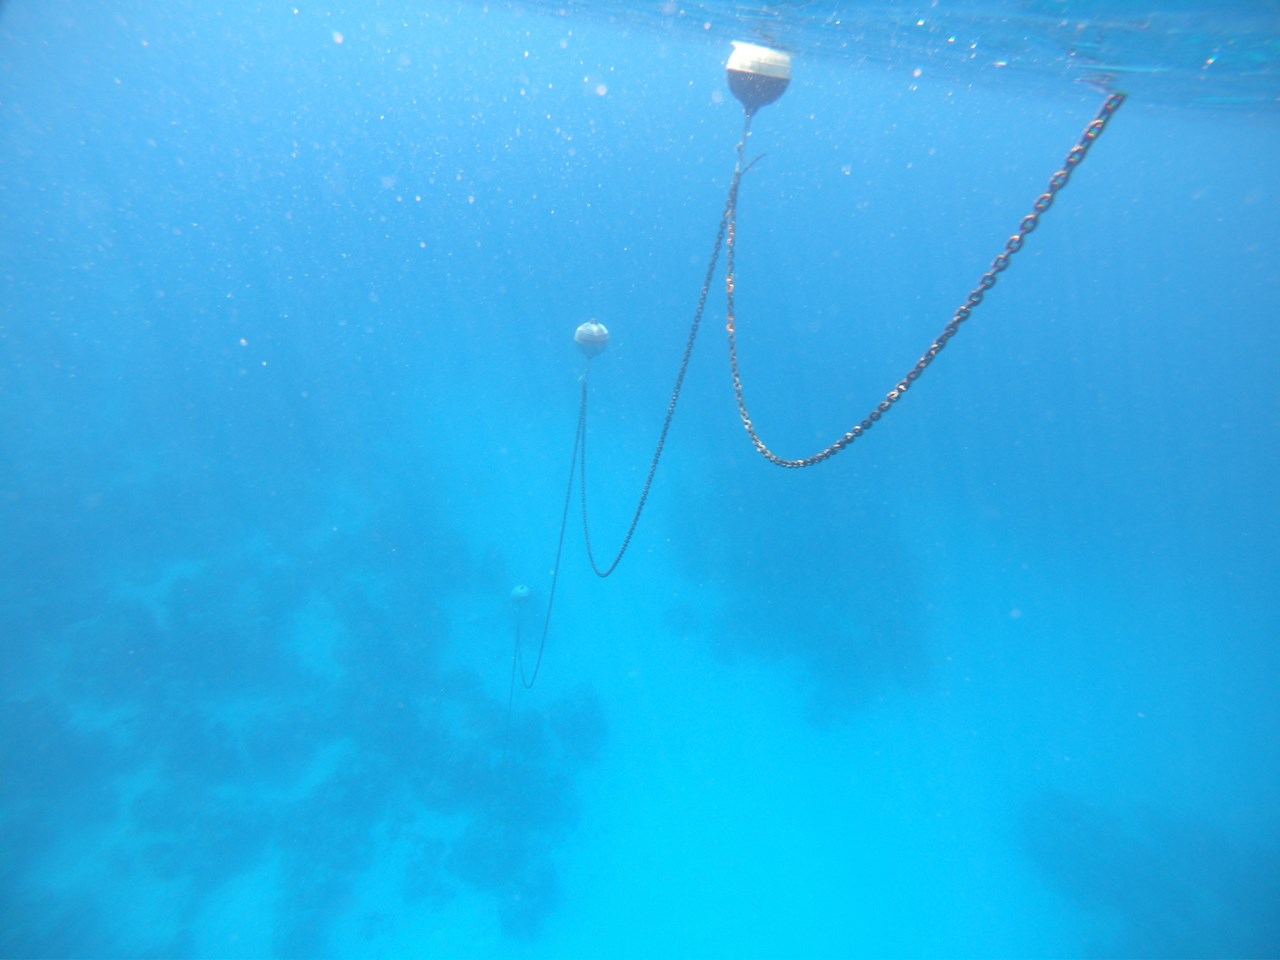 Floating chain um die Korallen zu schützen